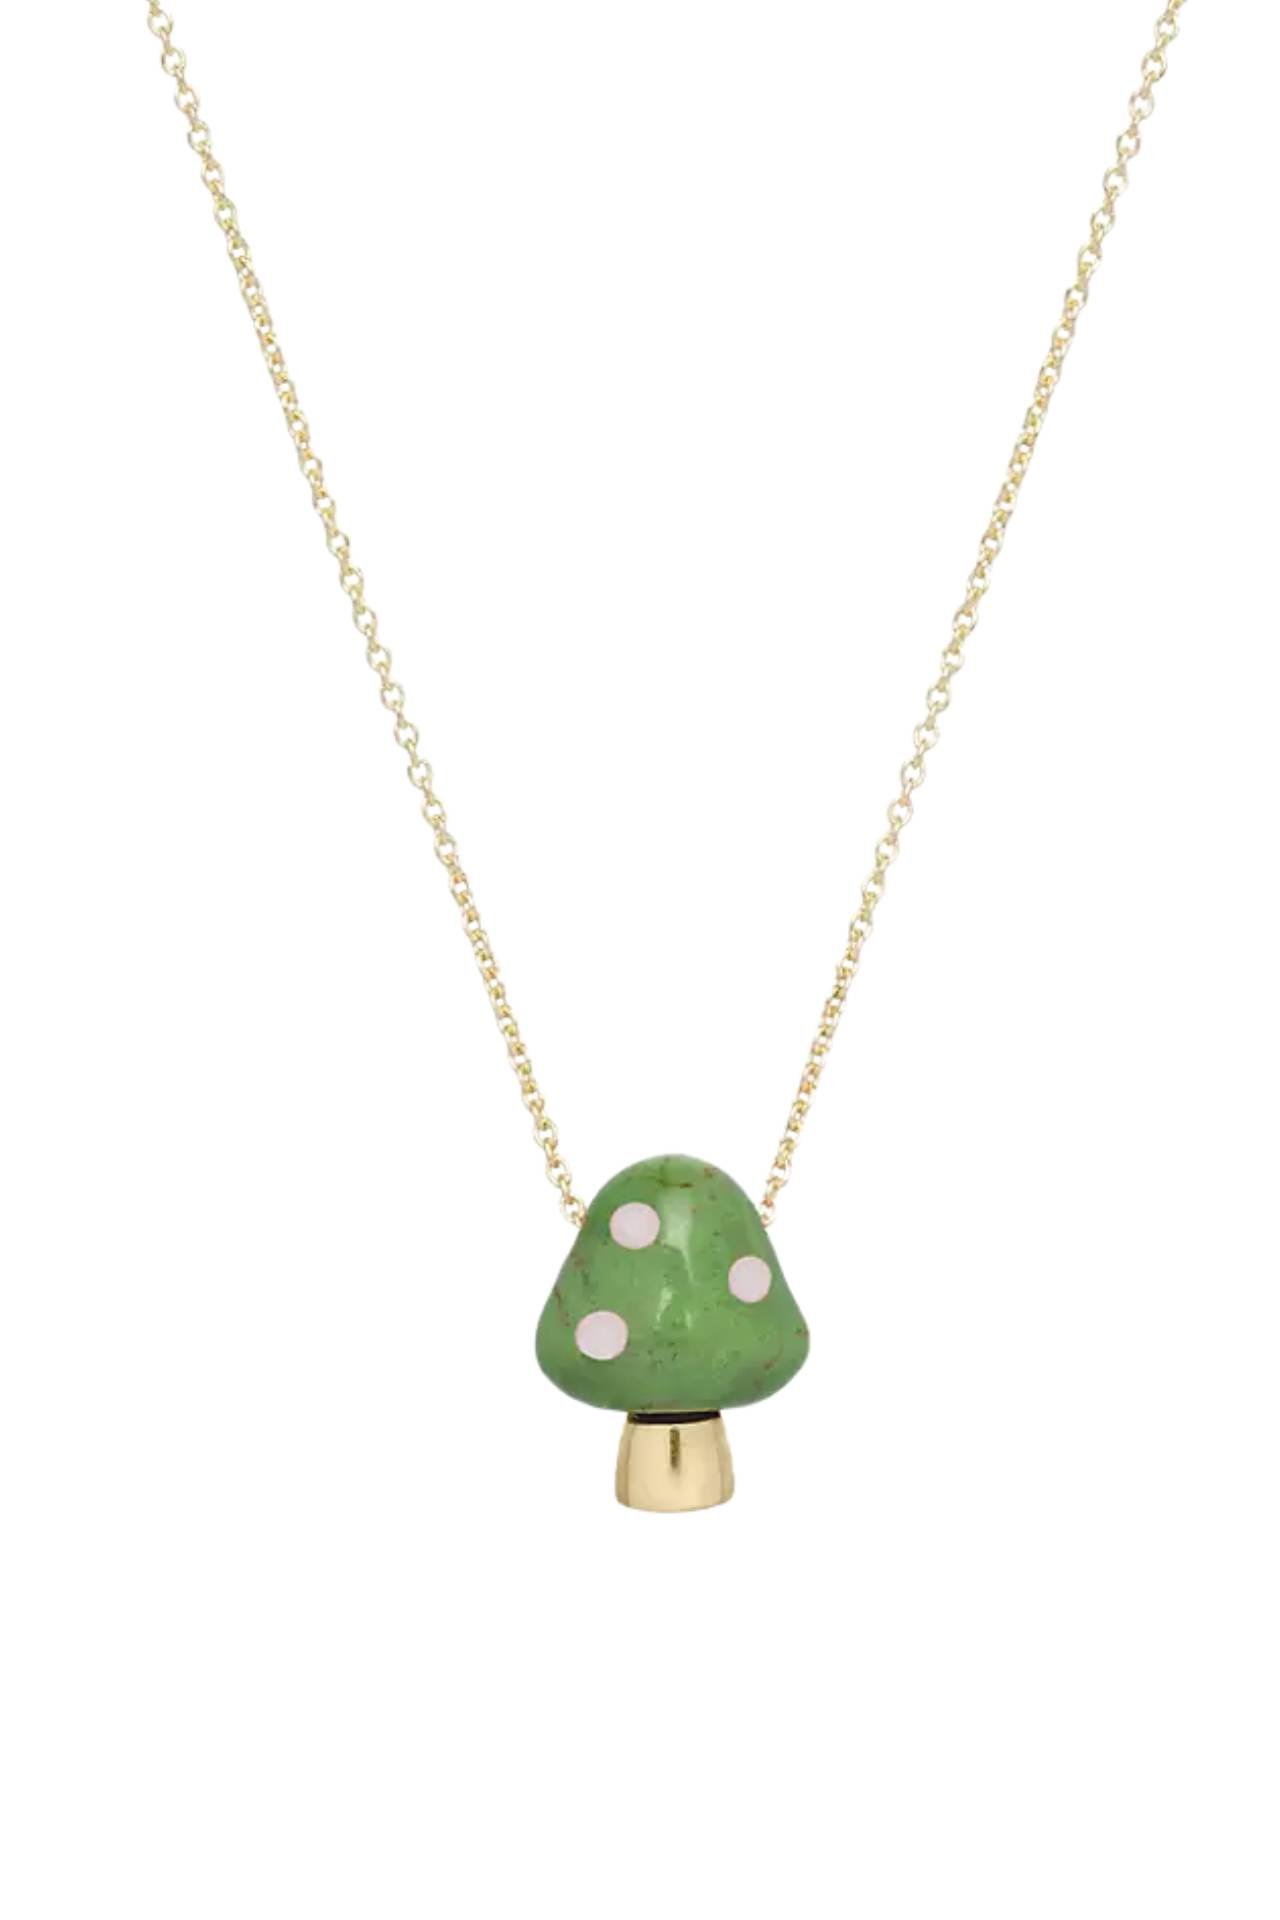 green mushroom necklace